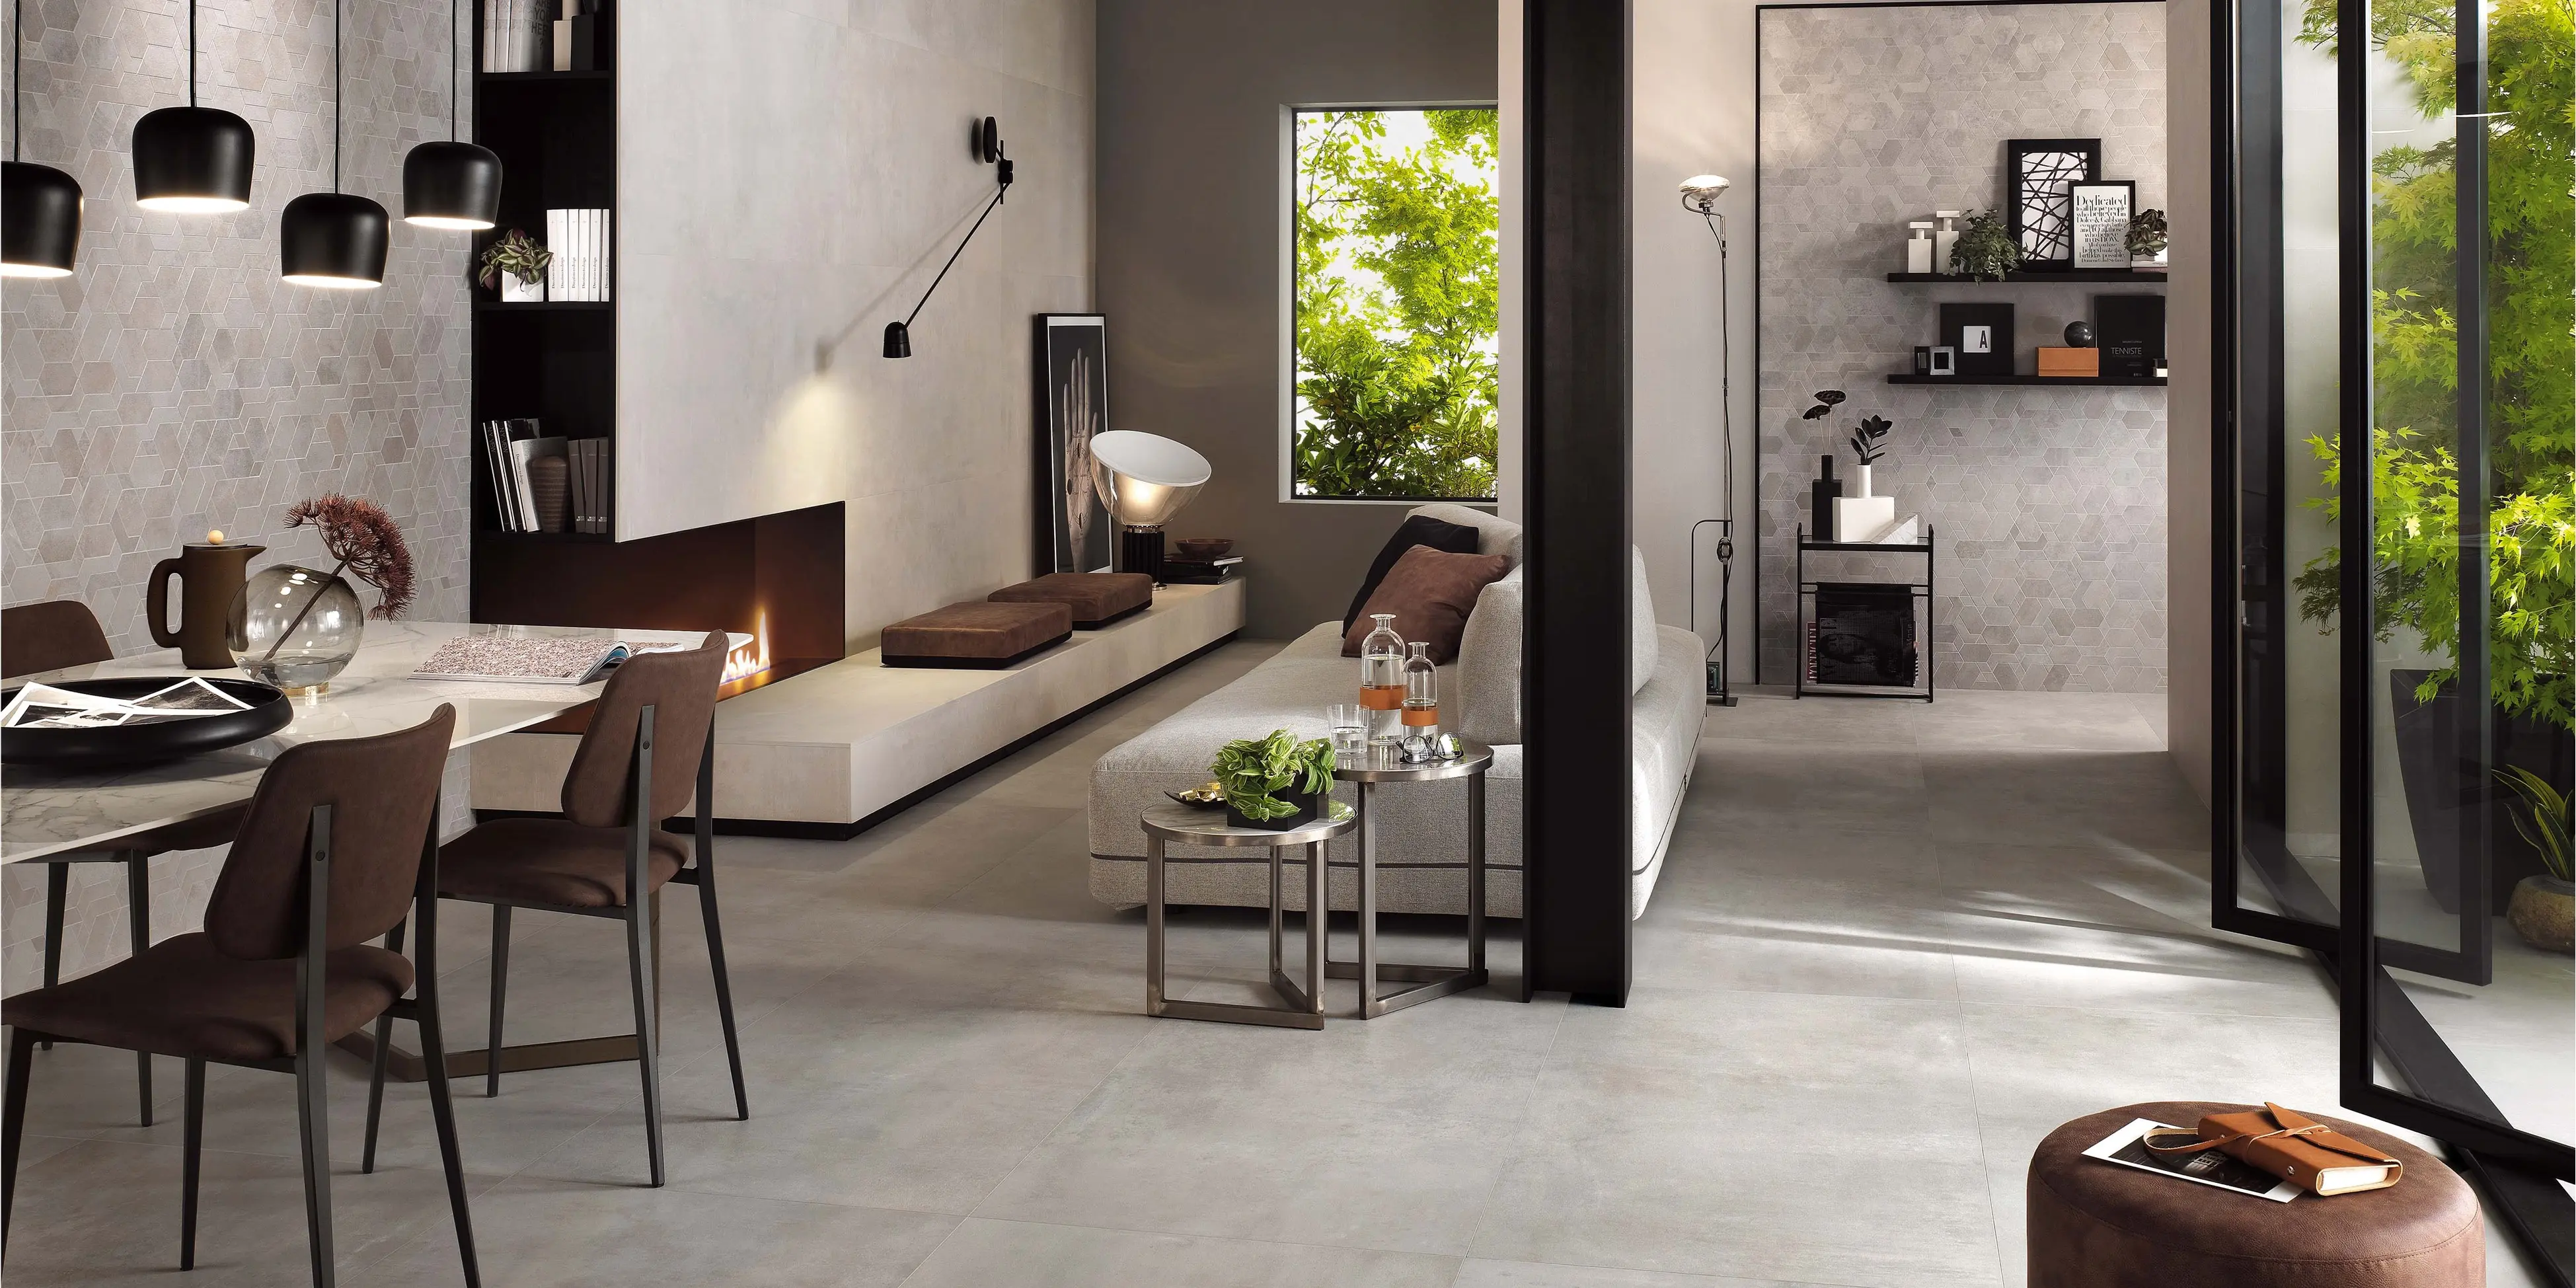 Få en tidløs elegance med klassiske beton fliser i dit køkkenalrum. Skab et stilfuldt og funktionelt rum, der inspirerer til samvær og hygge.